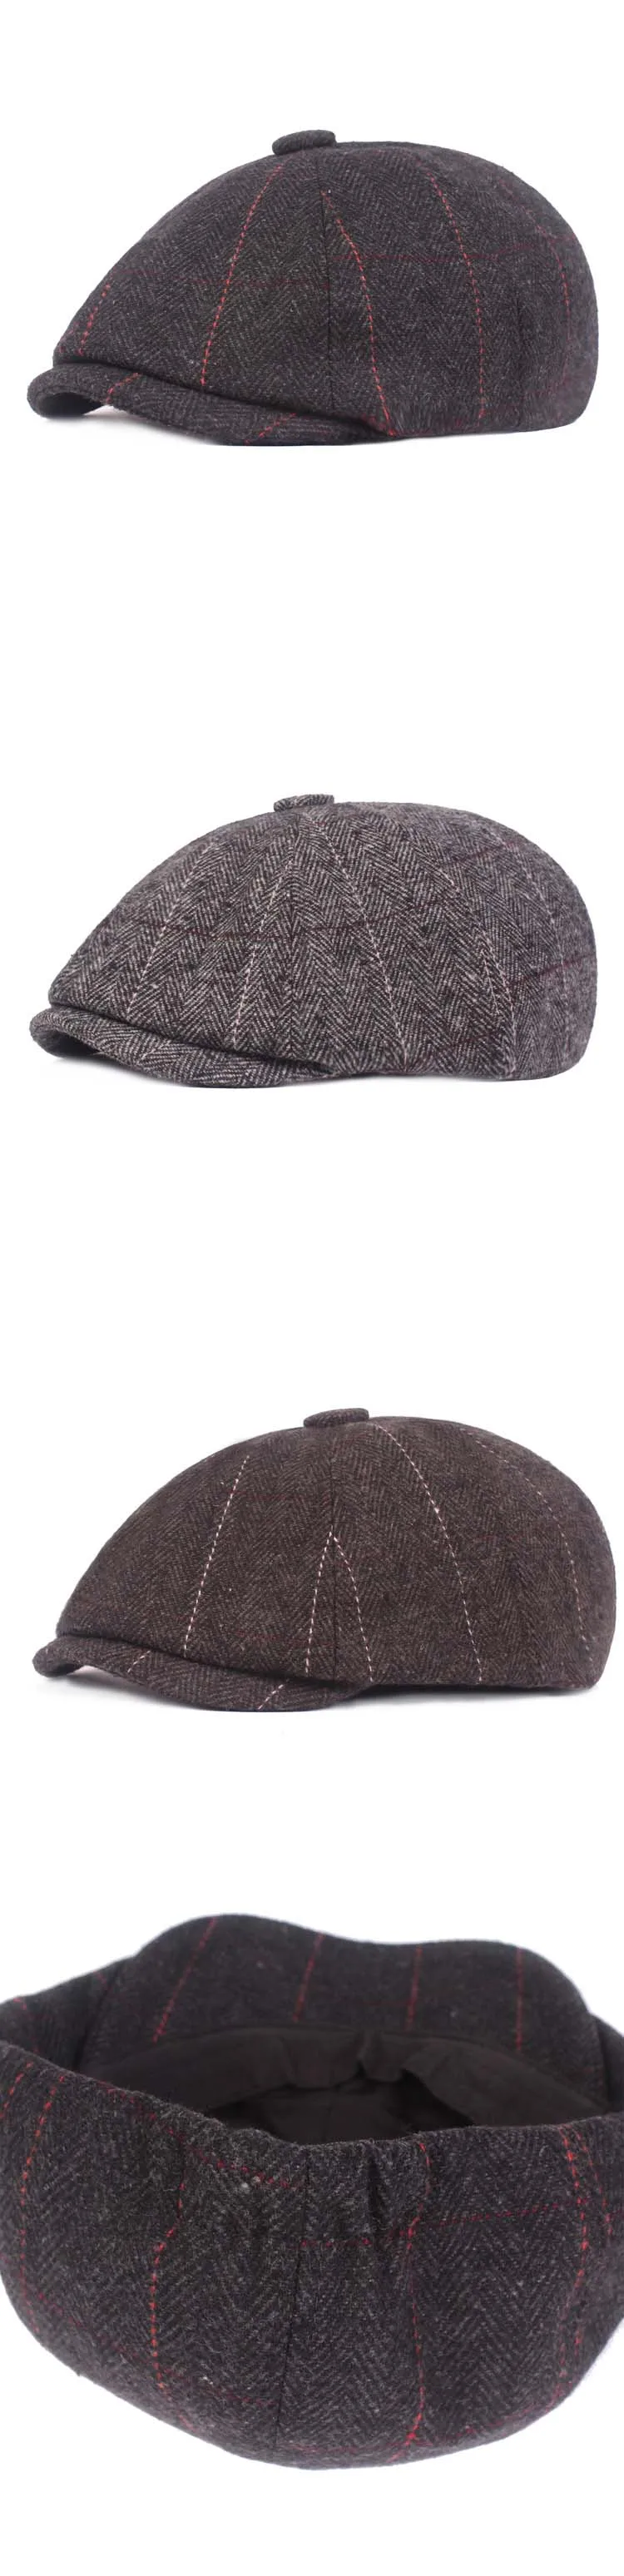 QDKPOTC высокое качество газетная Кепка s для мужчин шапки Gorras Planas восьмиугольная кепка для отдыха и полушерстяная полосатая плоская кепка